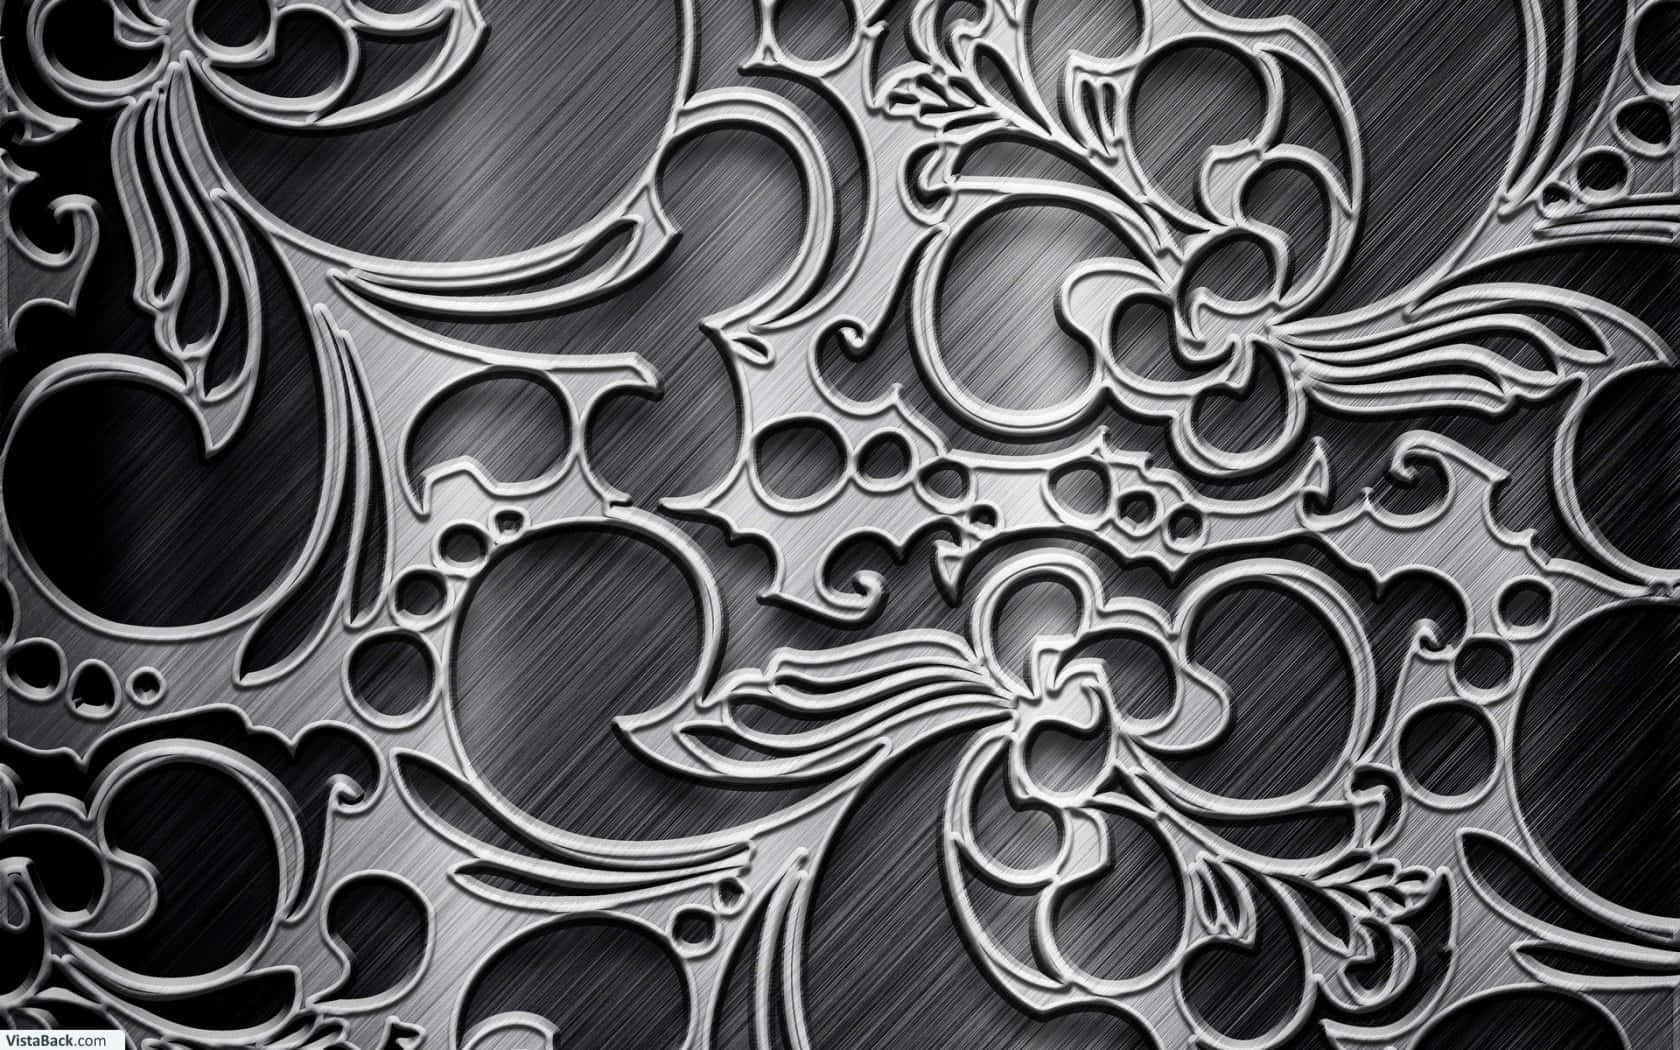 Dieseglänzend Schwarze Metallic Oberfläche Strahlt Eine Minimalistische, Aber Fesselnde Schönheit Aus. Wallpaper